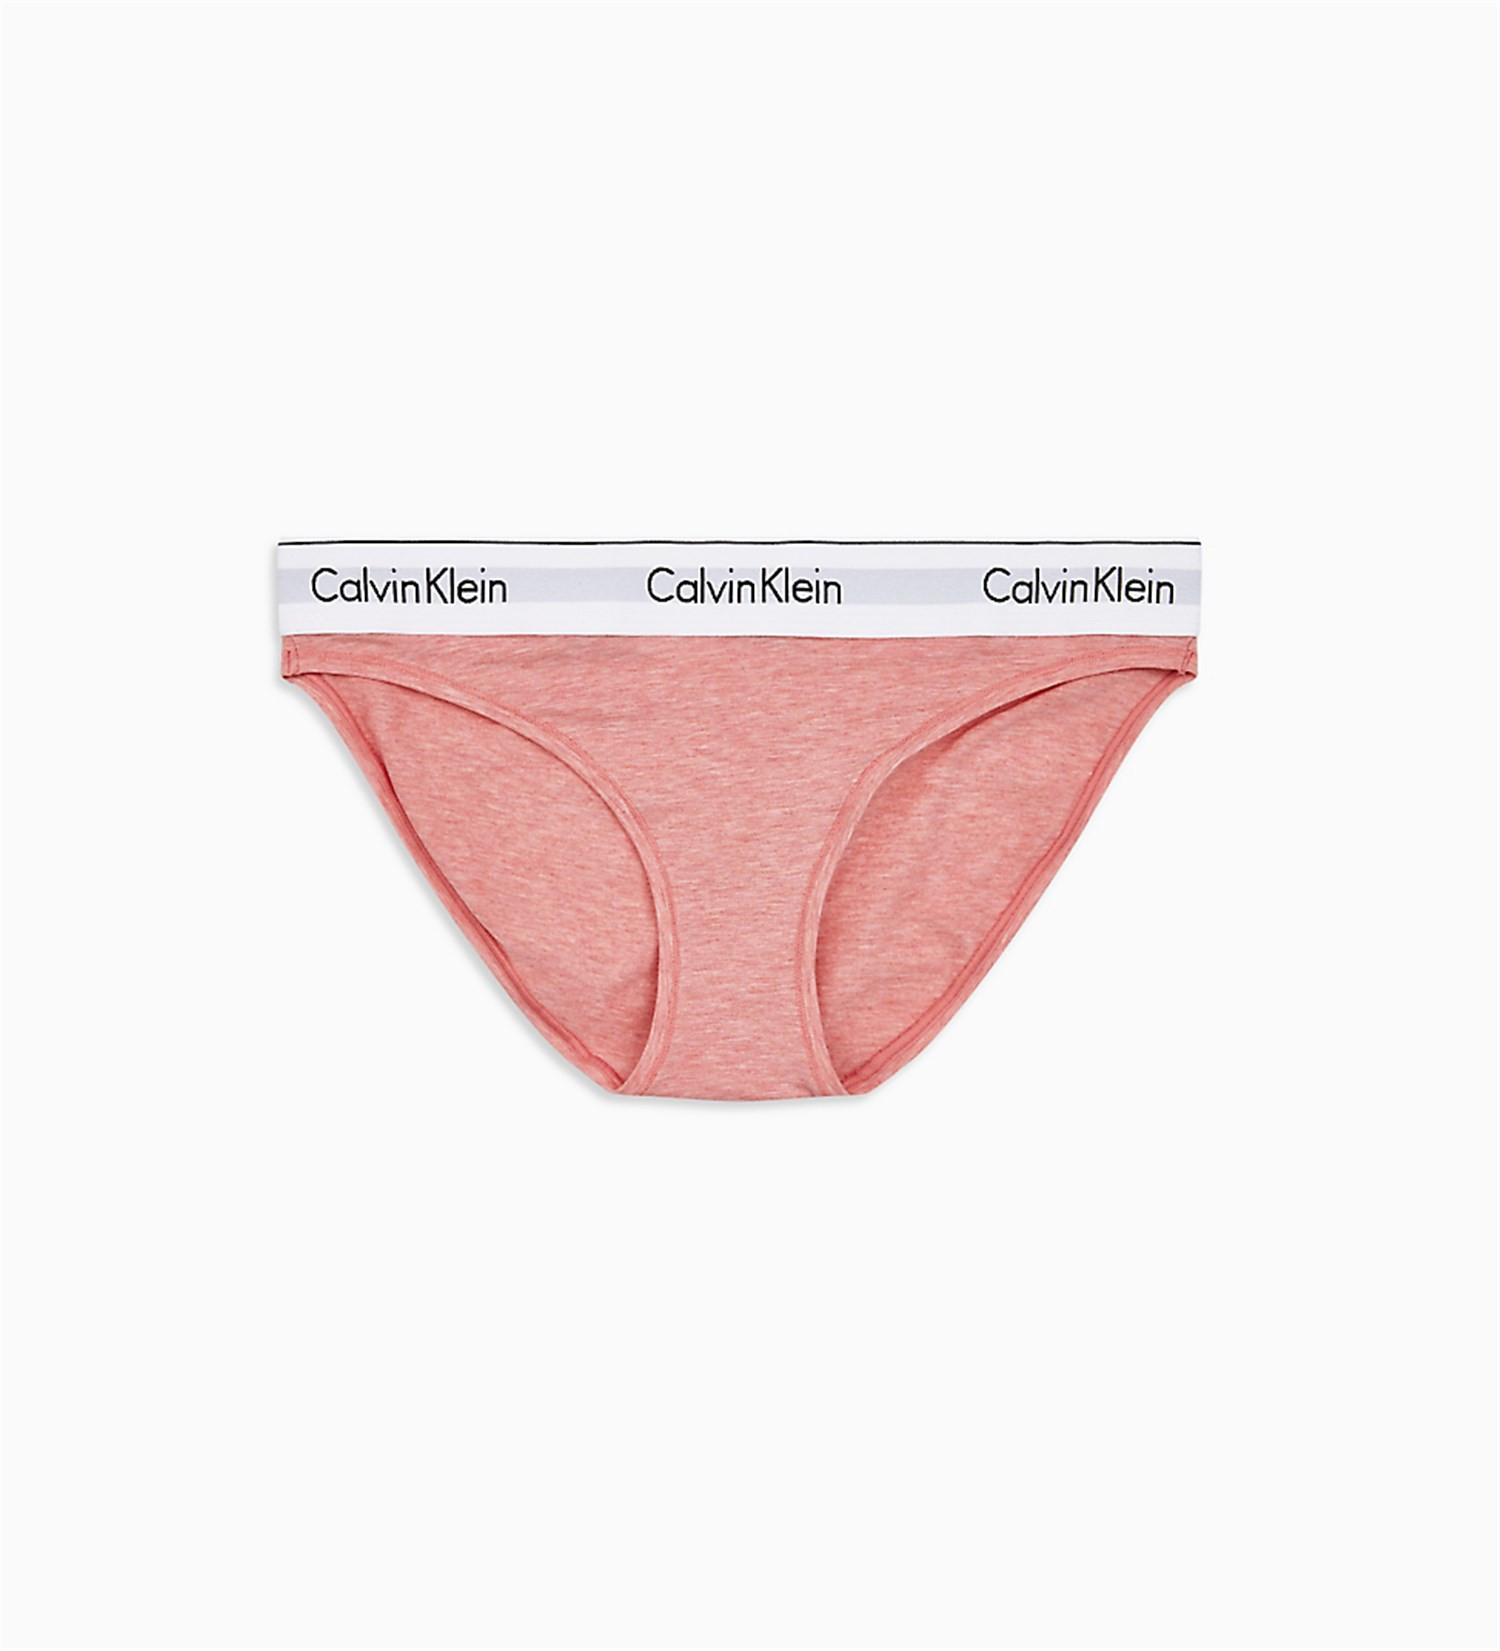 Kalhotky model 7854987 růžová růžová XS - Calvin Klein